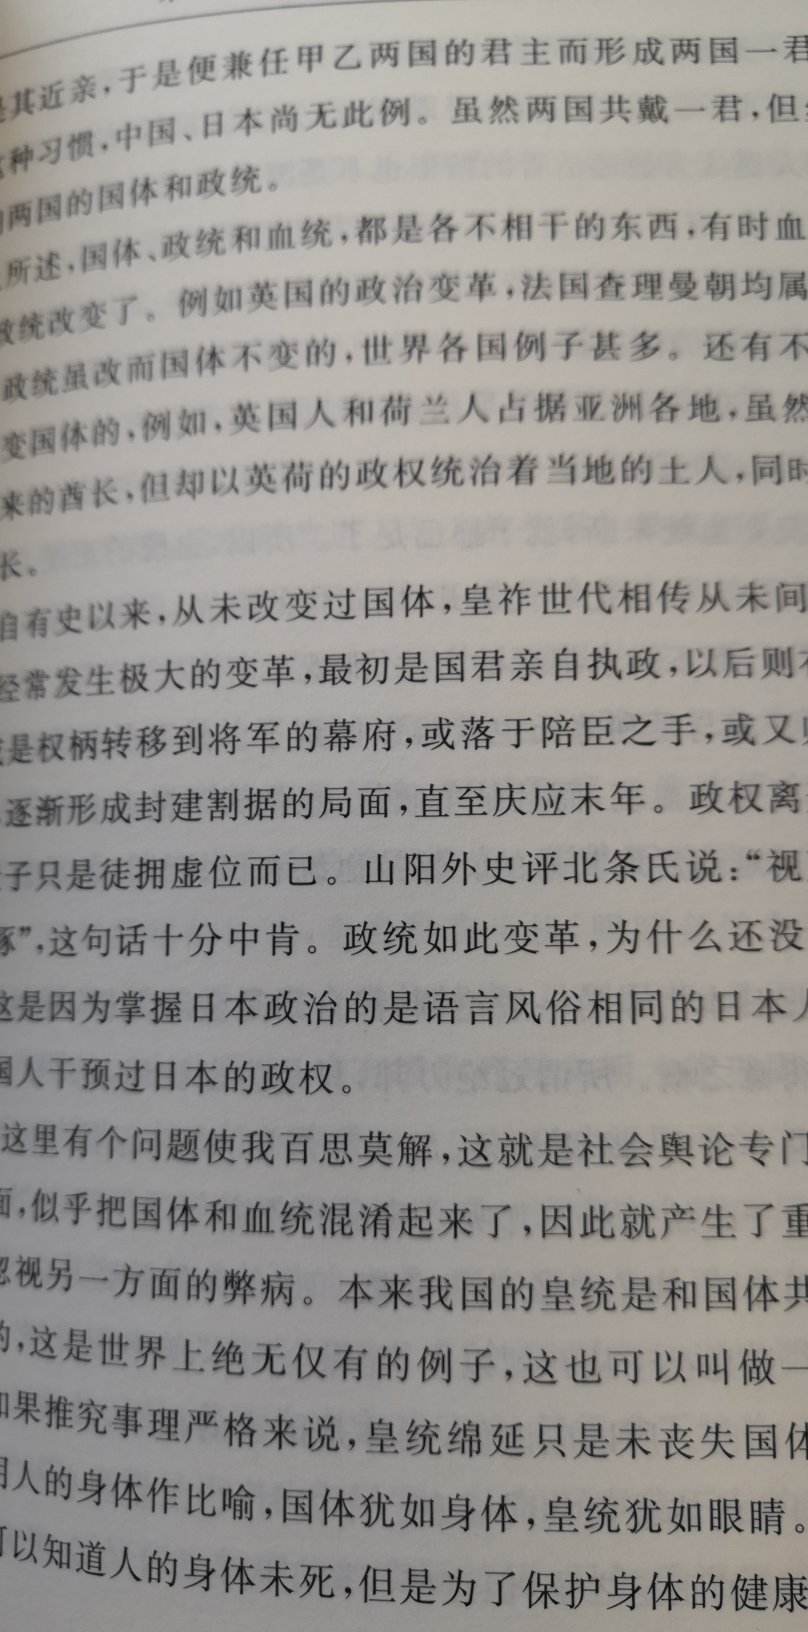 日本明治时期思想家福泽谕吉的哲学著作，脱亚入欧论的鼻祖，侵略思想的始作俑者。汉译世界名著之一，版本印刷都不错。